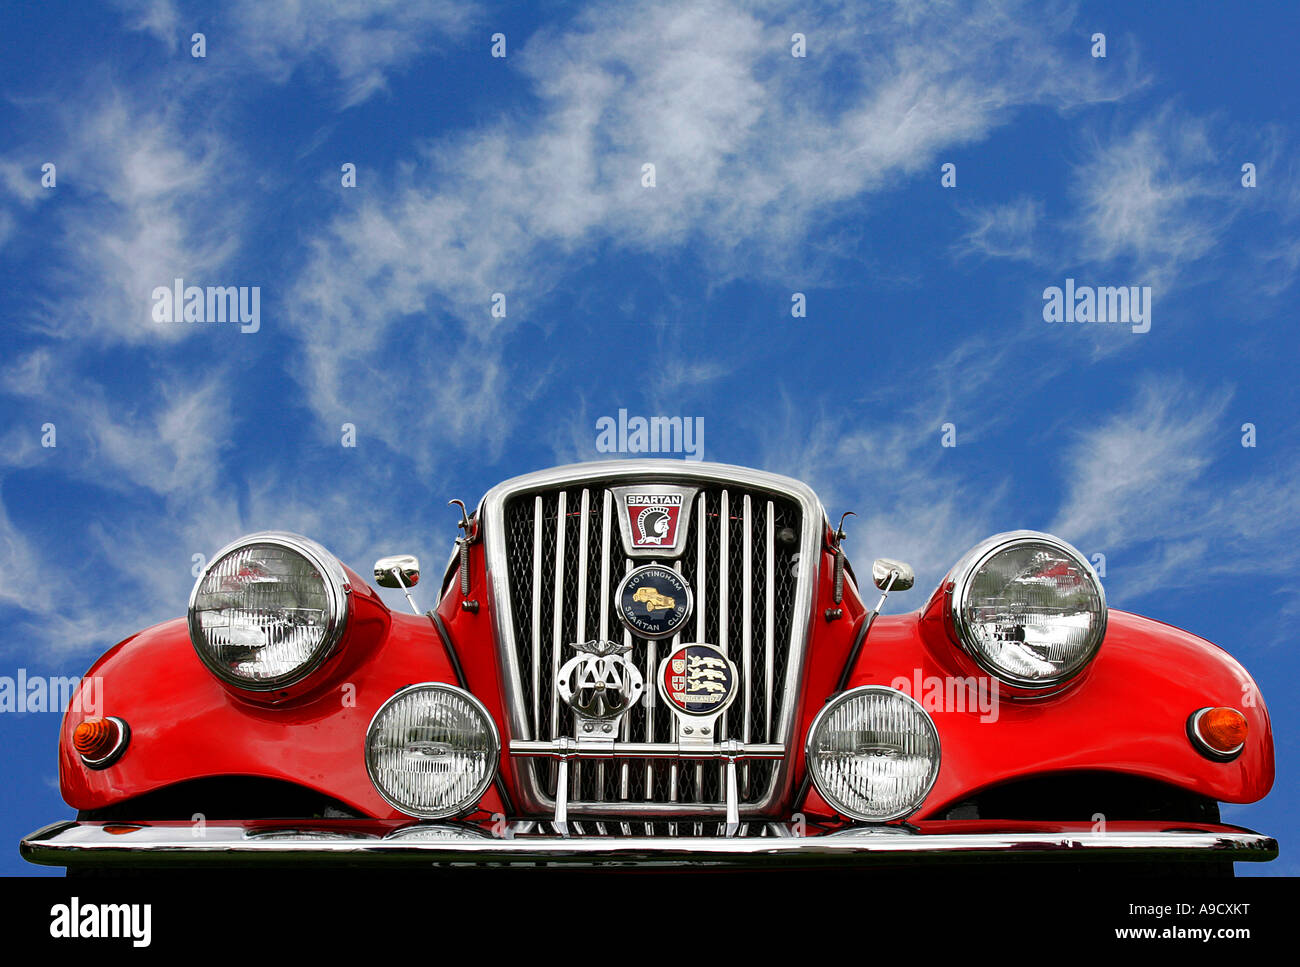 MG Spartan rojo coche clásico historia antigua vehículo vintage blue sky Foto de stock